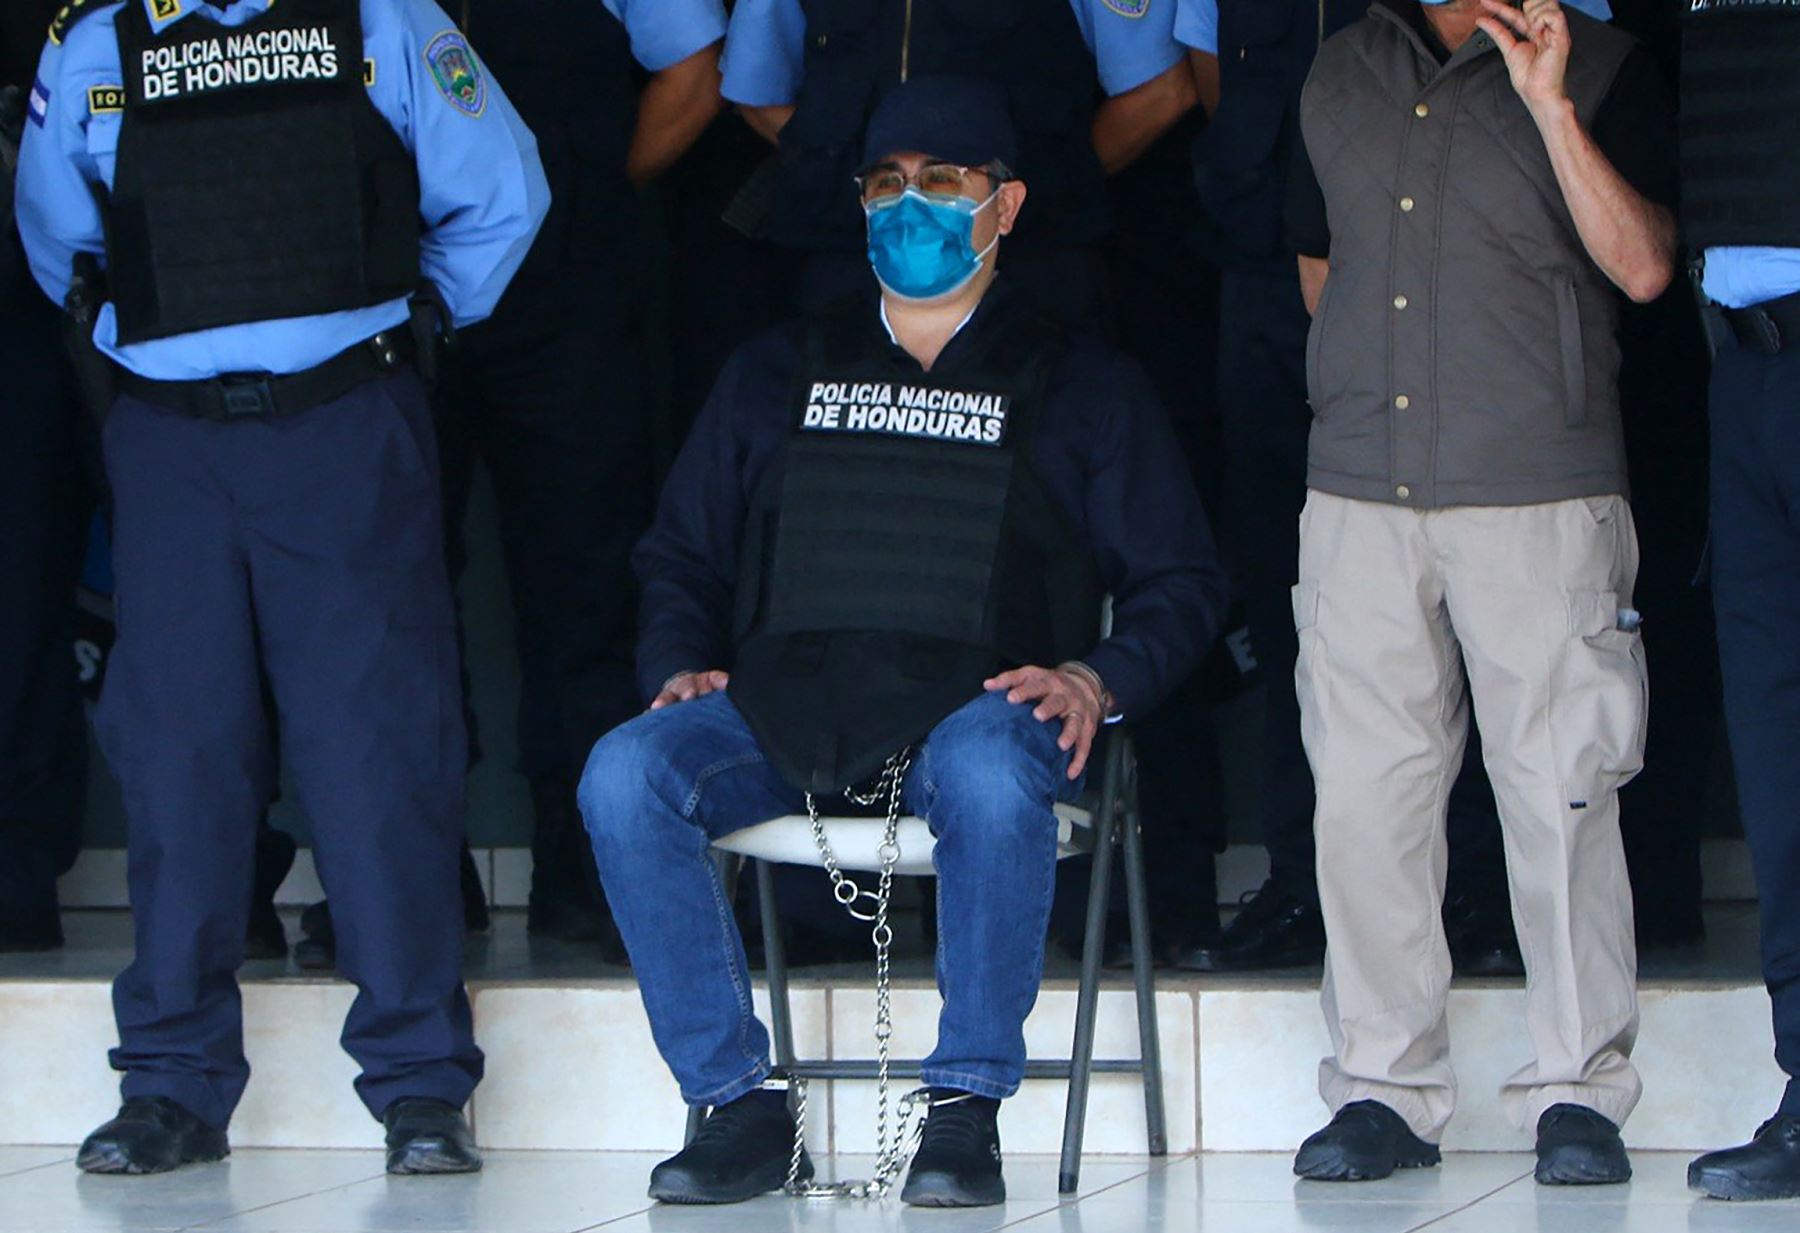 La defensa de Hernández apeló, sin éxito, la decisión judicial de extradición ante la Corte Suprema. Foto: AFP.